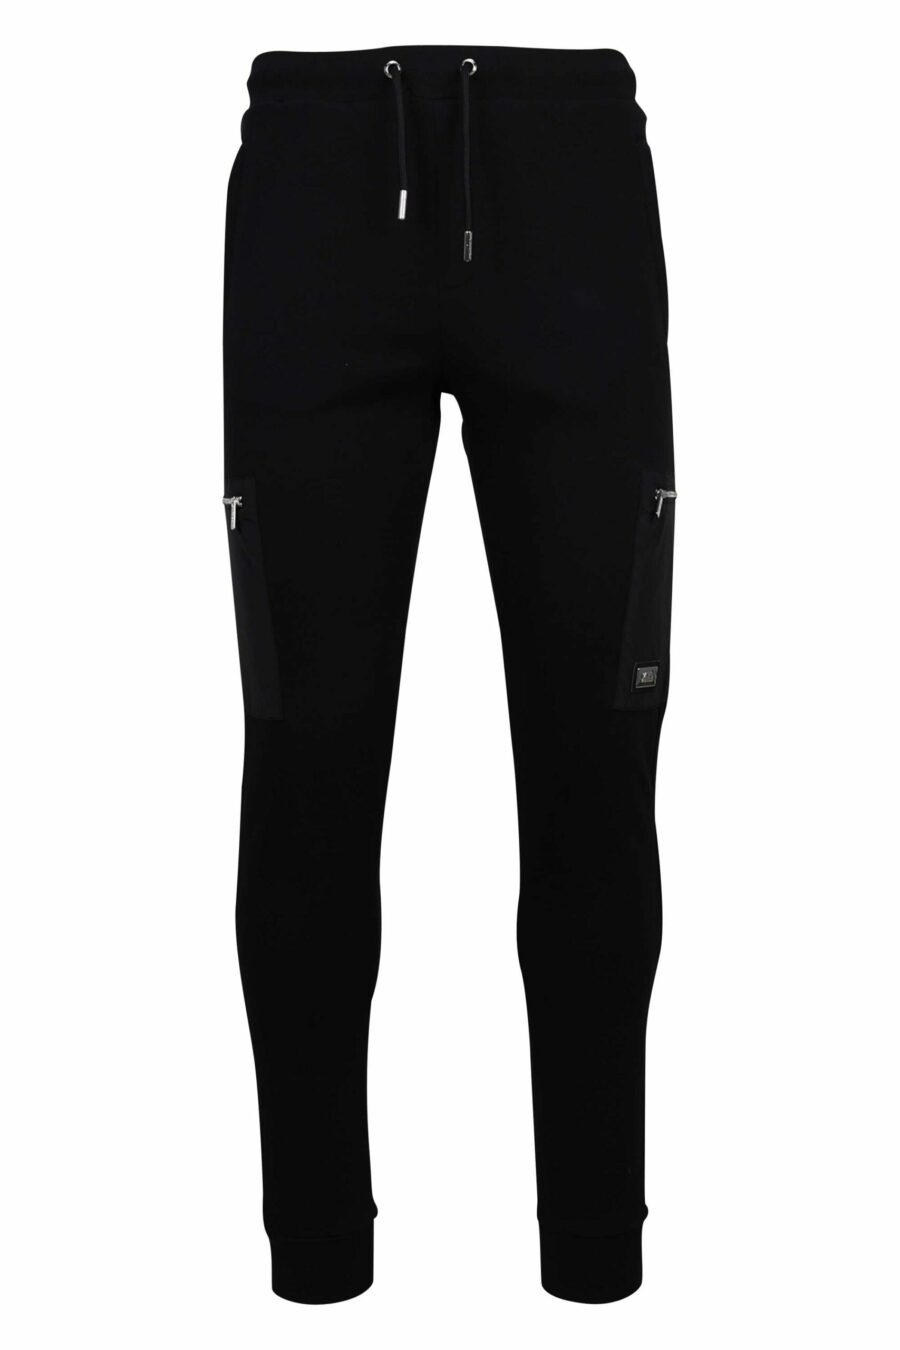 Pantalón de chándal negro con bolsillos laterales con cremallera - 4062226654265 1 scaled